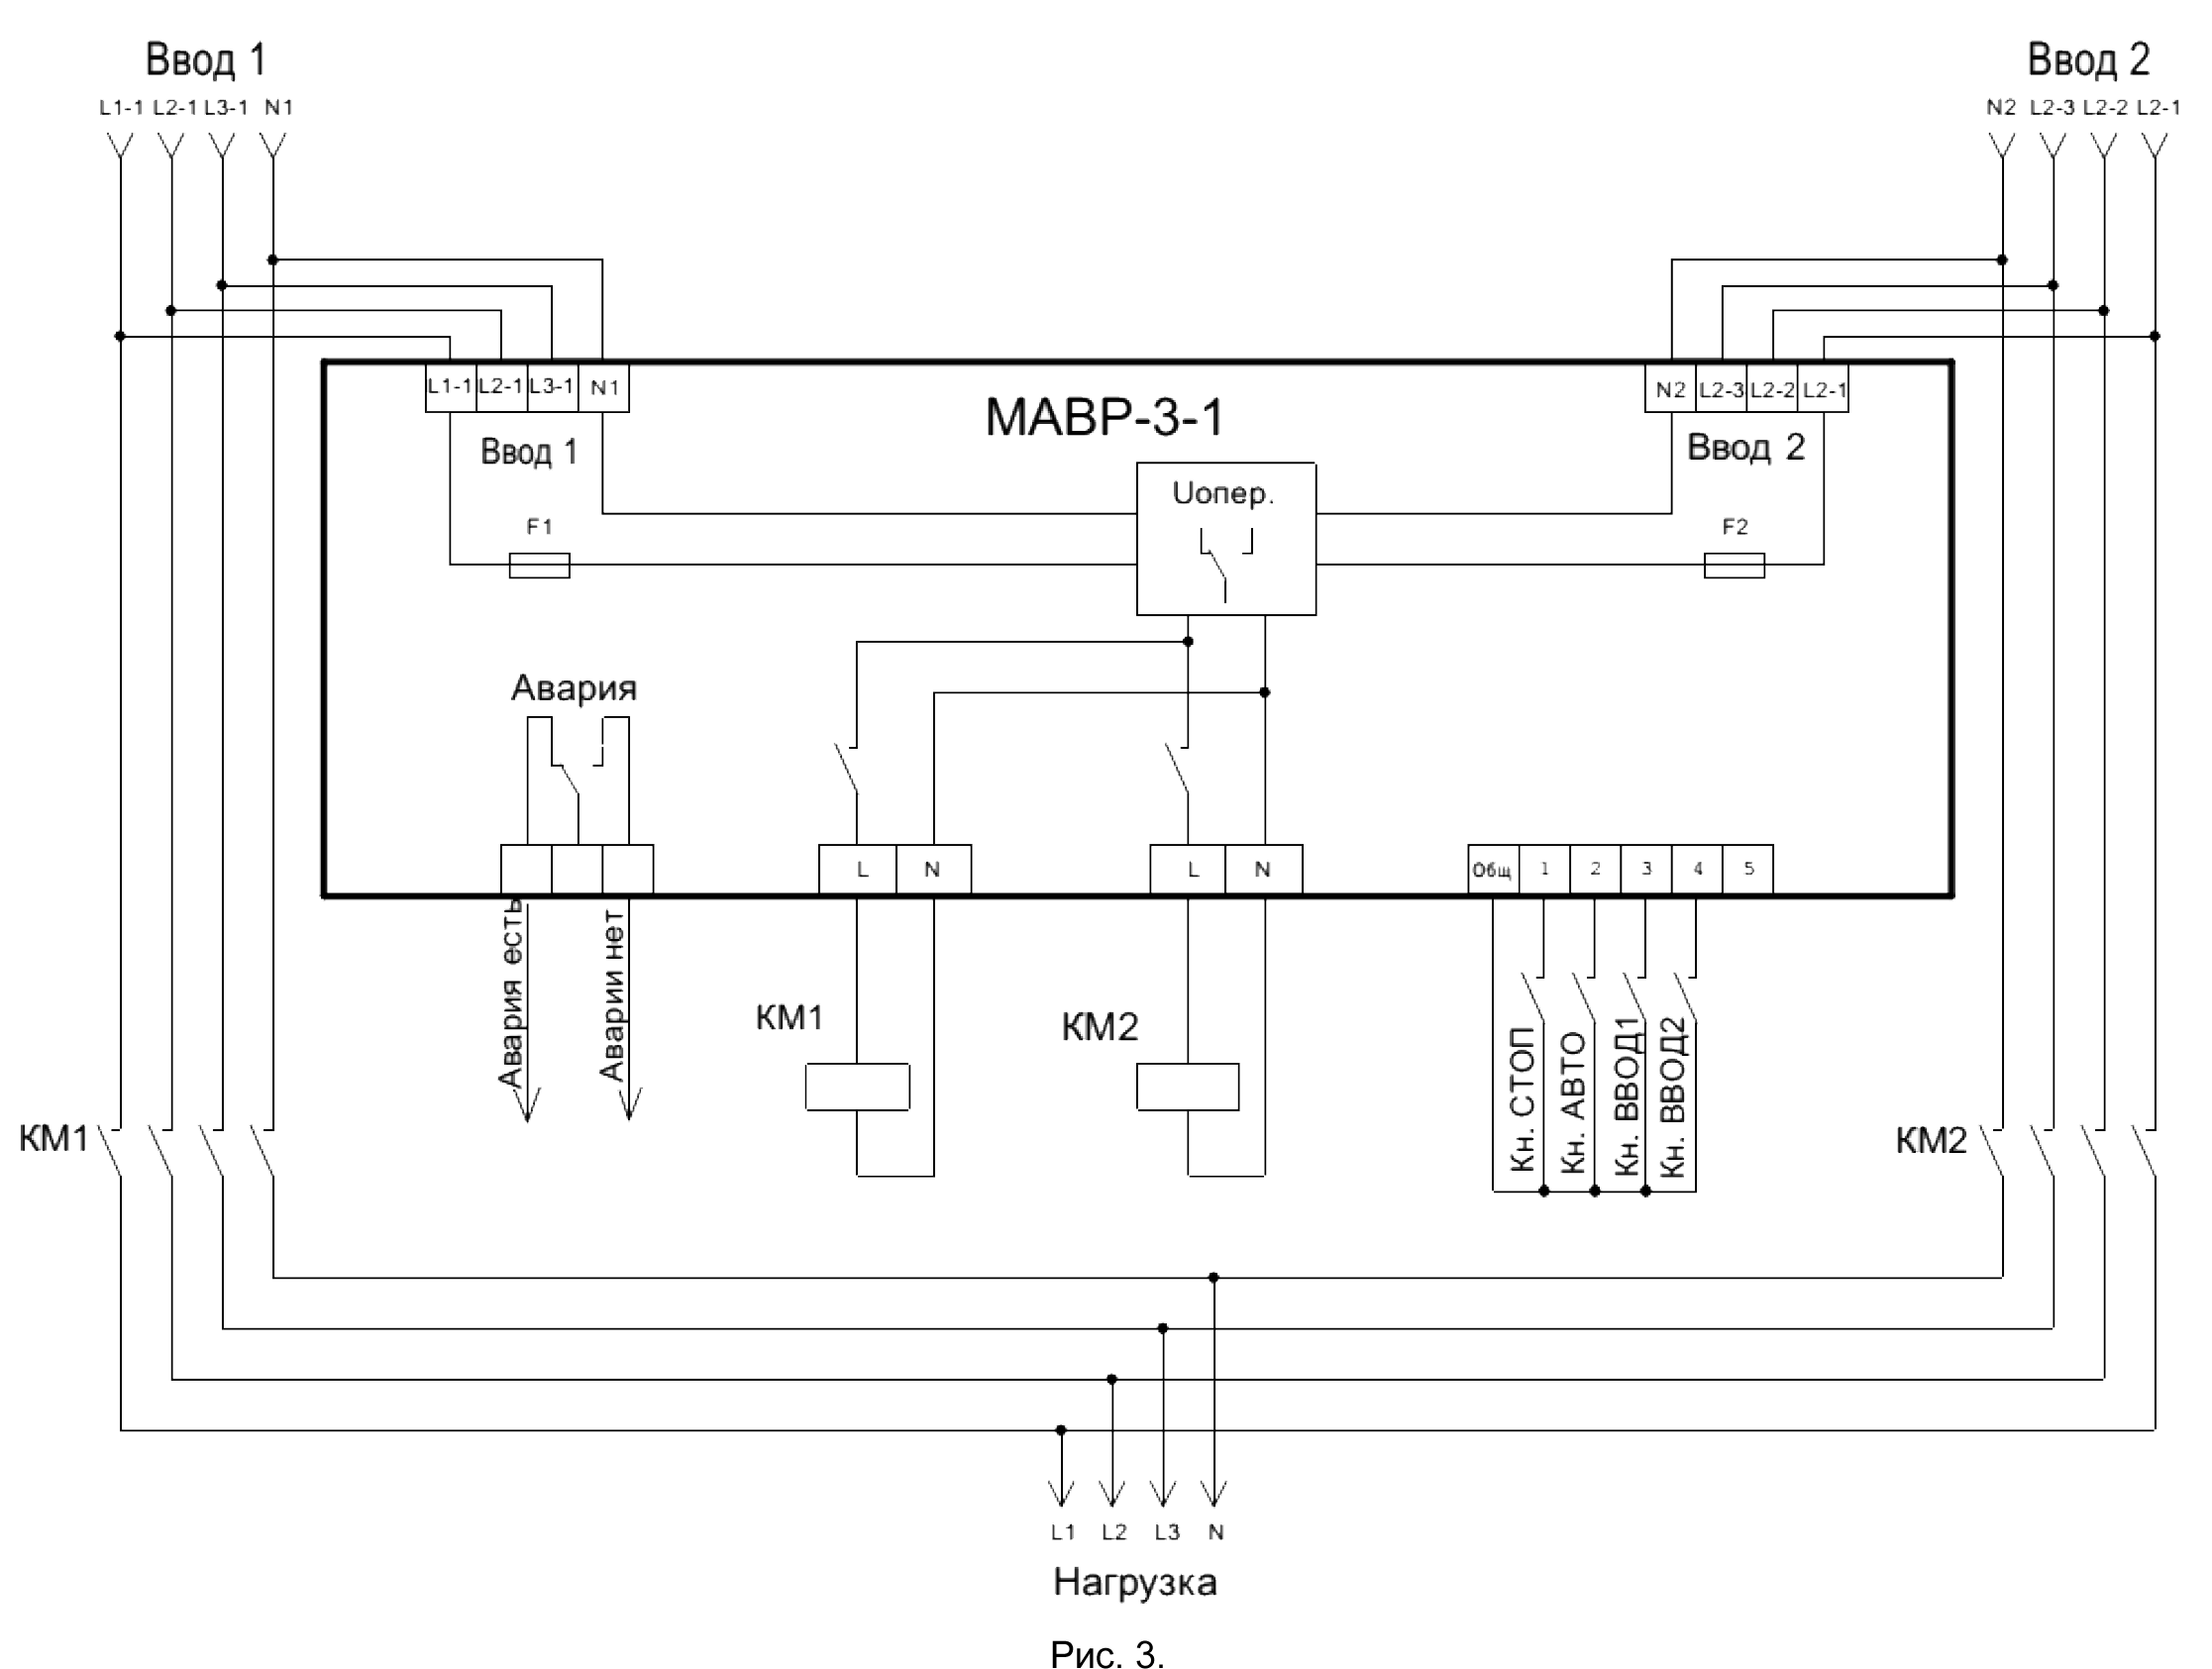 Схемы авр для генератора с системой запуска: на 2 и 3 ввода, для однофазной и трехфазной сети, на контакторах, магнитных пускателях и с реле контроля напряжения